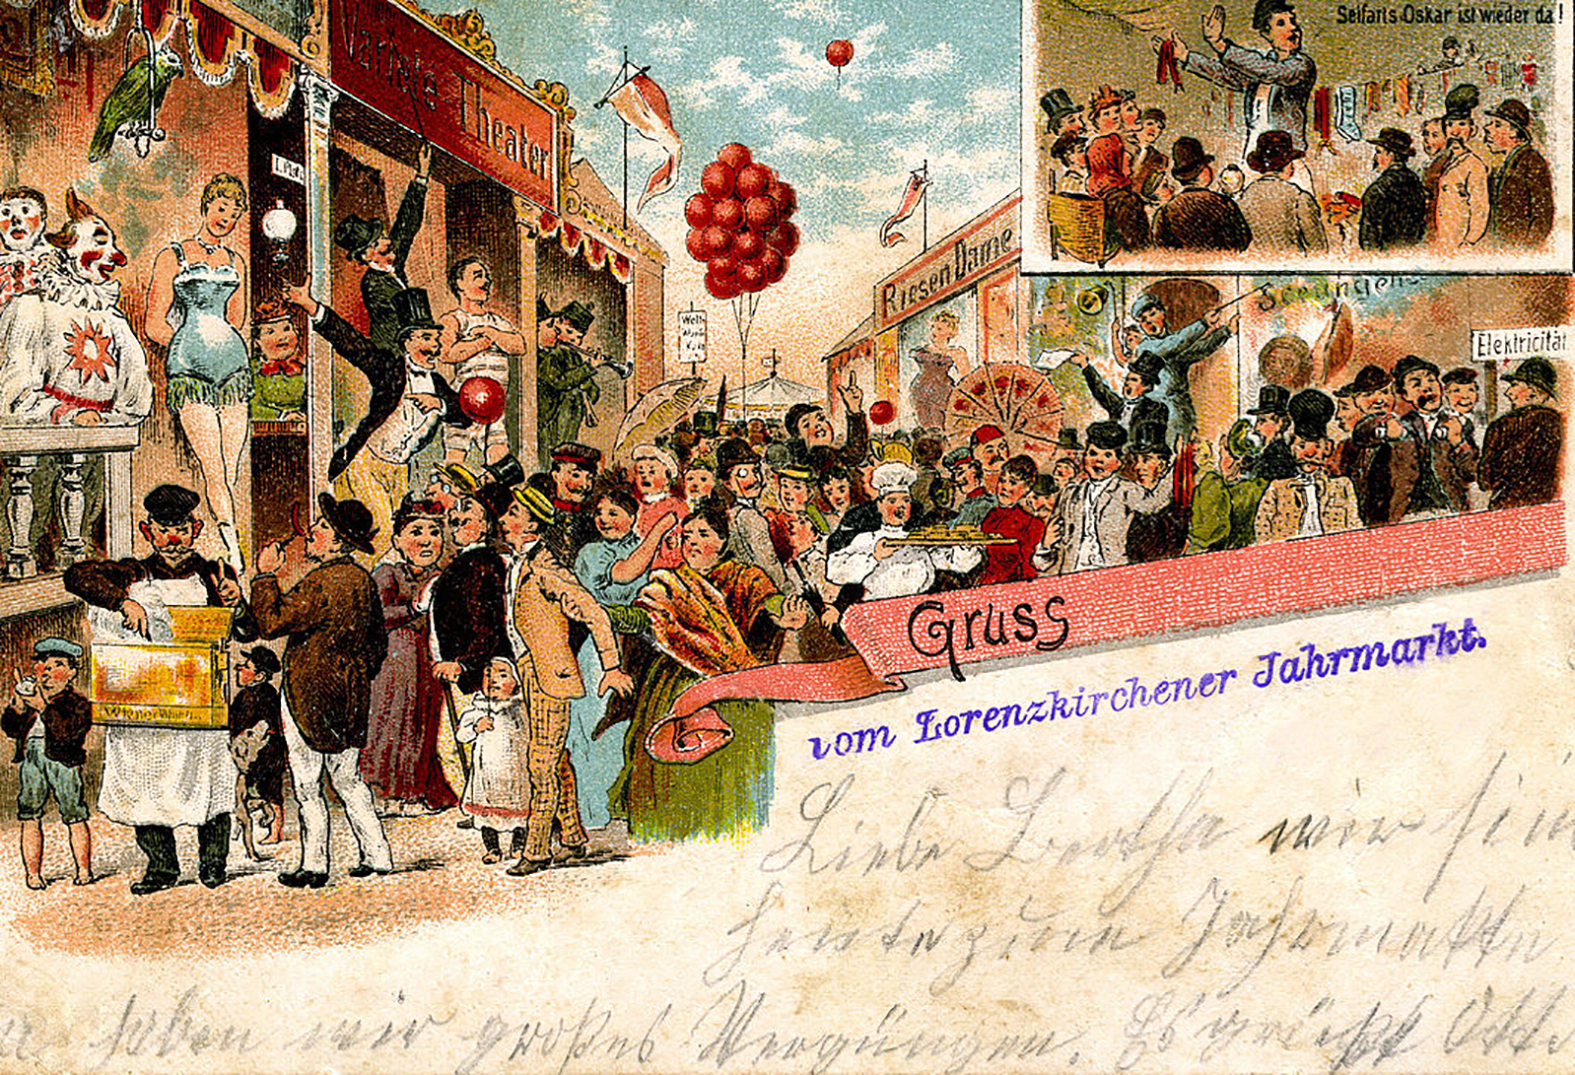 Kermis in Lorenzkirch, ansichtkaart uit 1900. Bron: Bruno Bürger & Ottillie Lith. Anstalt Leipzig